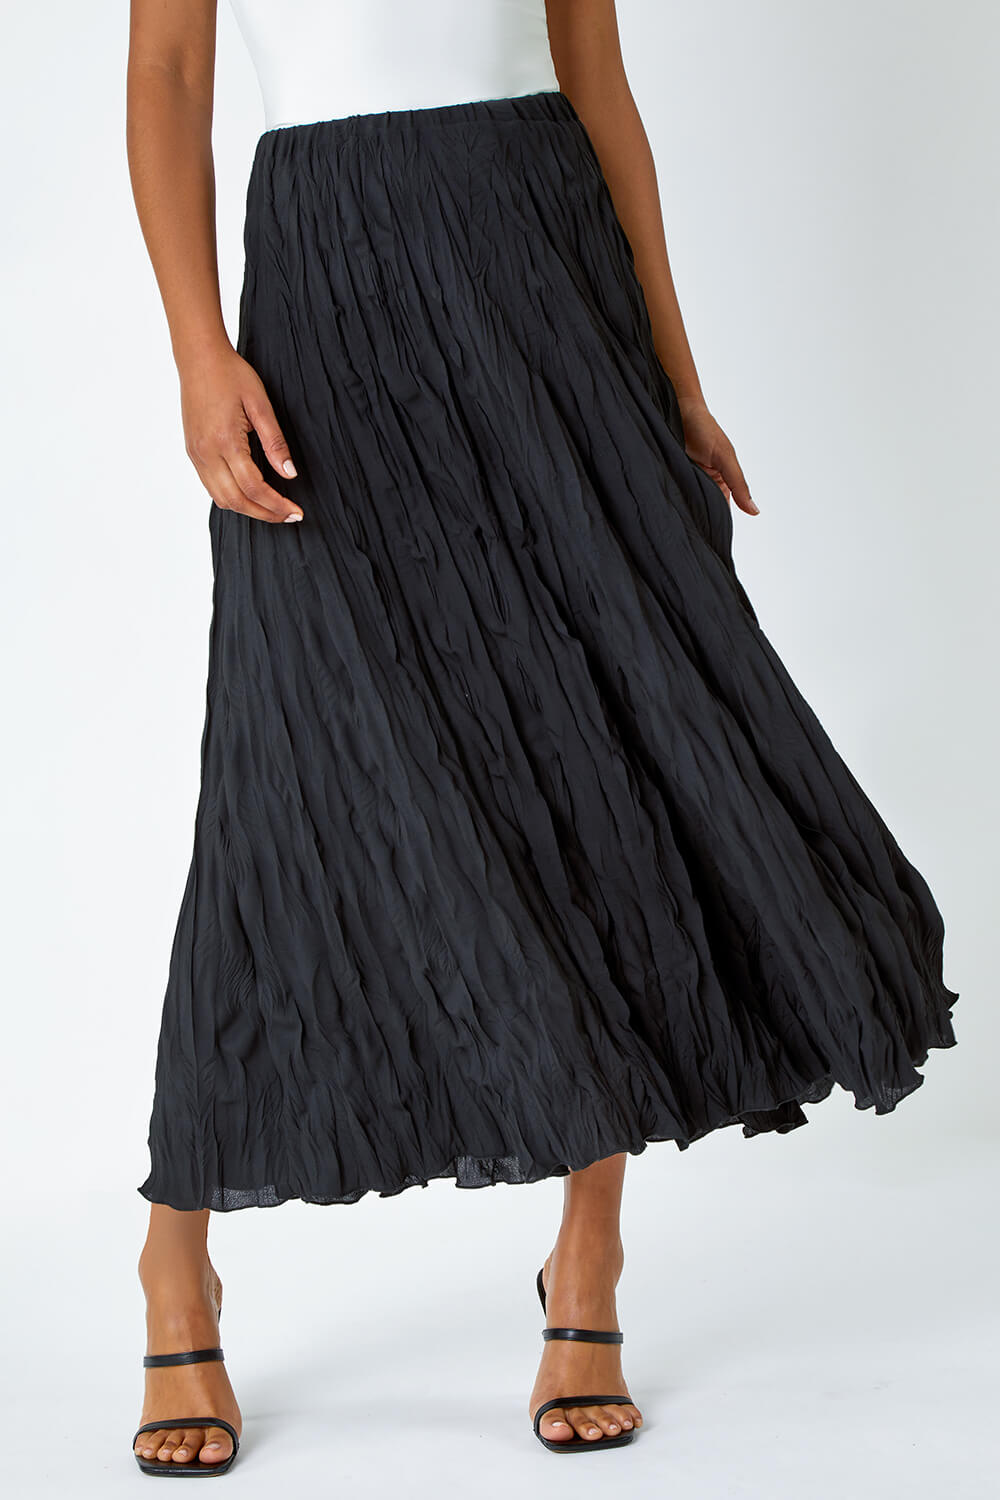 Black Textured Crinkle Midi Skirt, Image 3 of 5